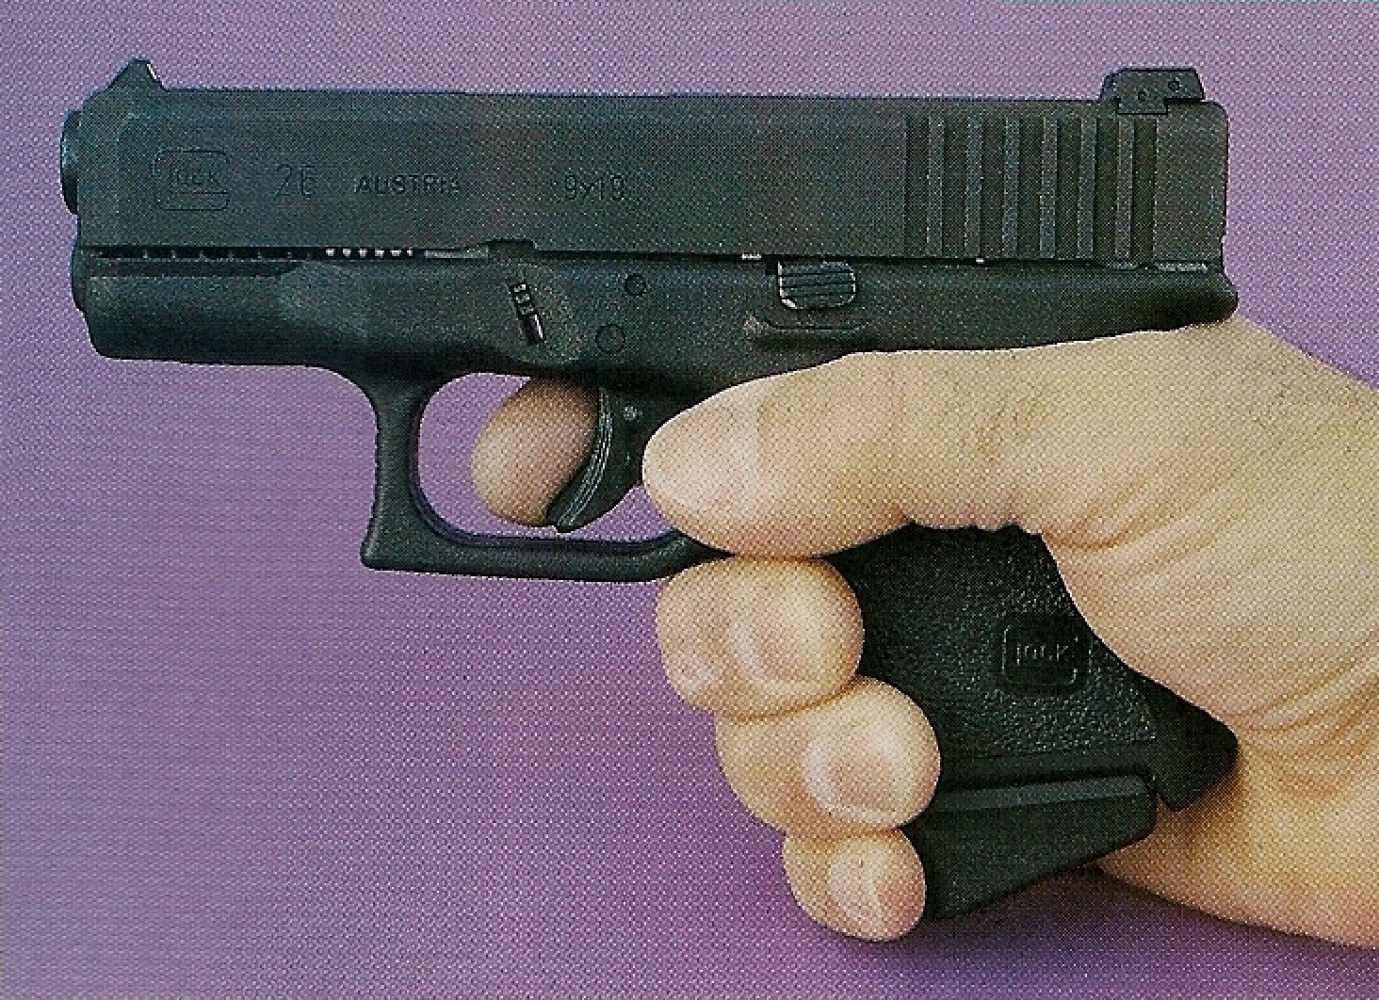 Le Glock 26 offre une prise en mains tout à fait convenable malgré sa poignée très courte. L'emploi d'un talon de chargeur oblique permet de placer l'auriculaire.